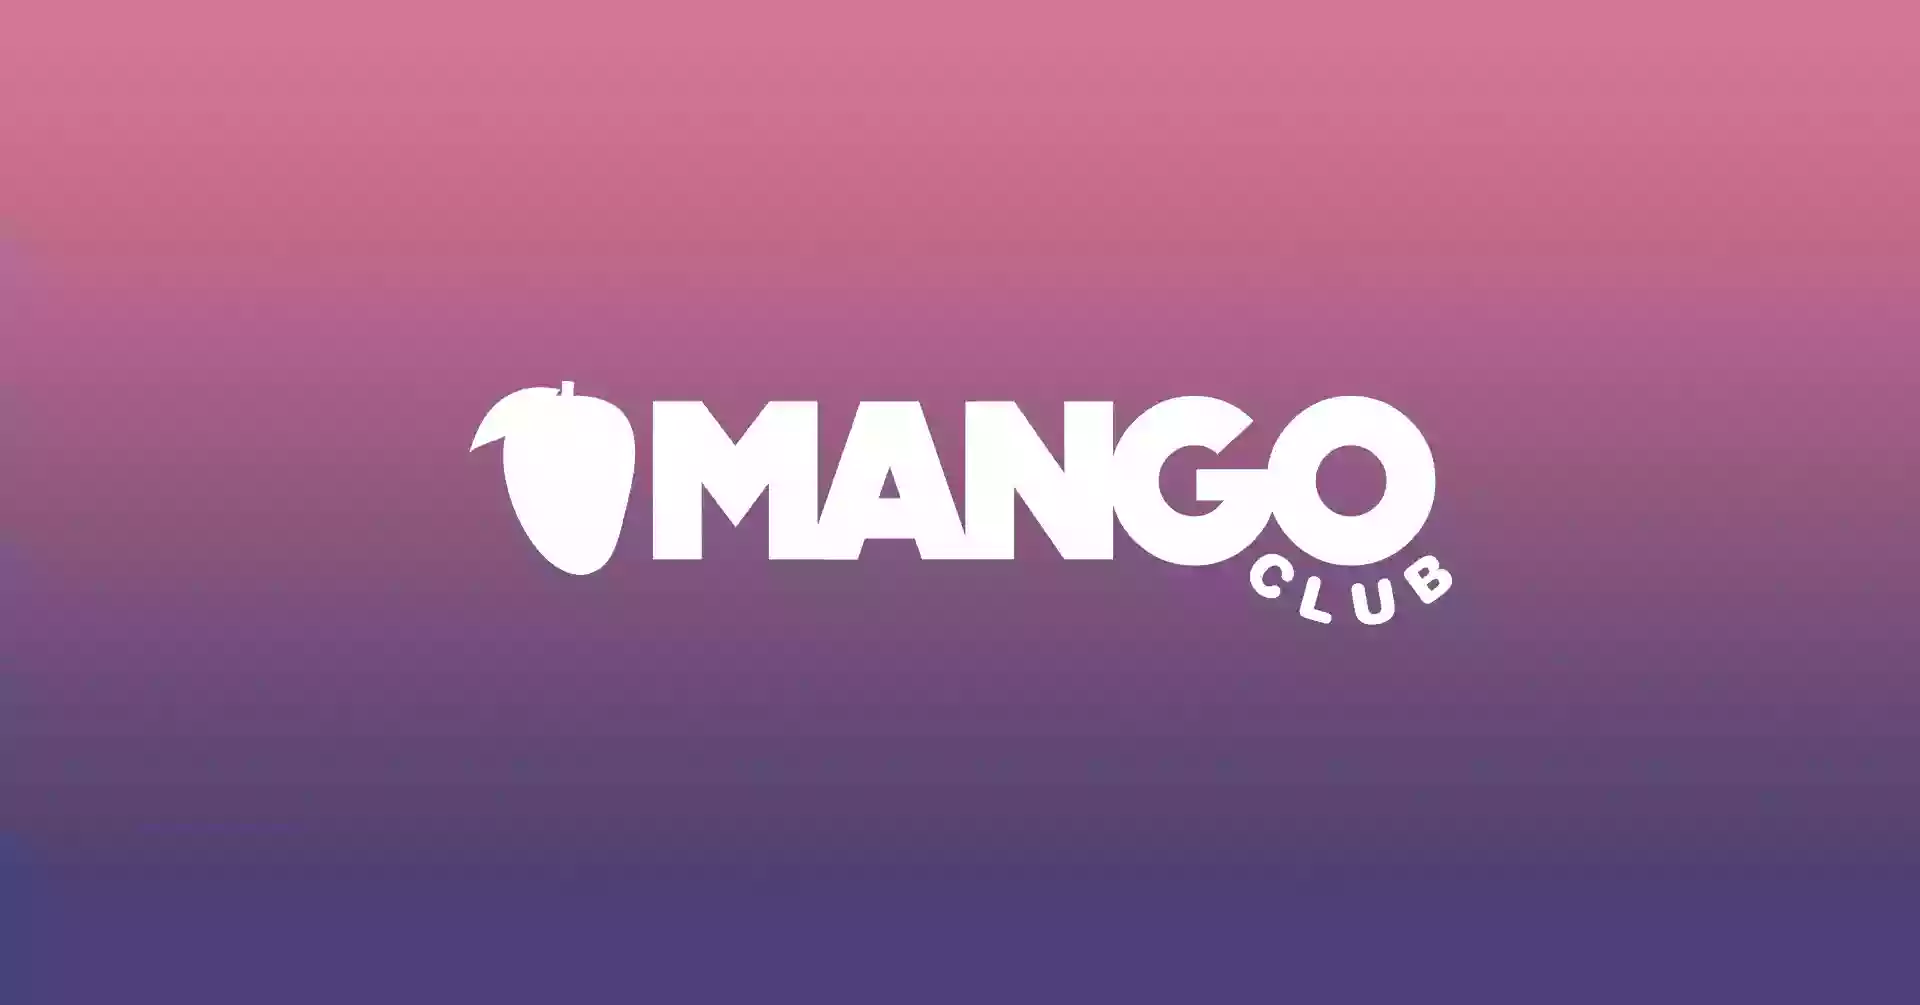 Mango Club